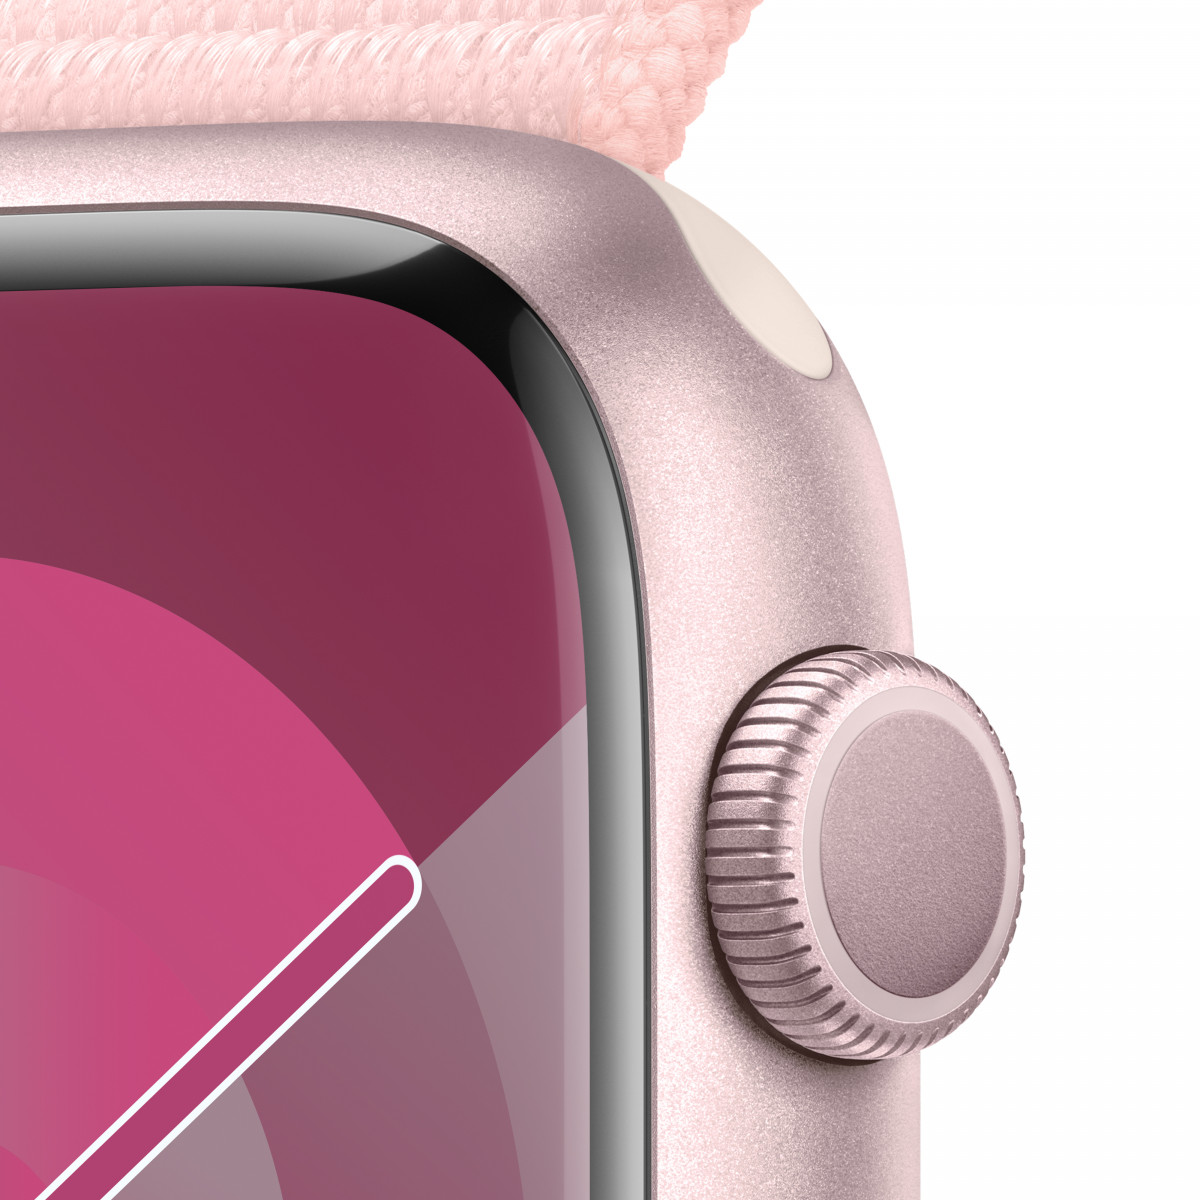 Apple Watch Series 9 GPS, 41 мм, ярко-розовый, спортивный браслет розового цвета 